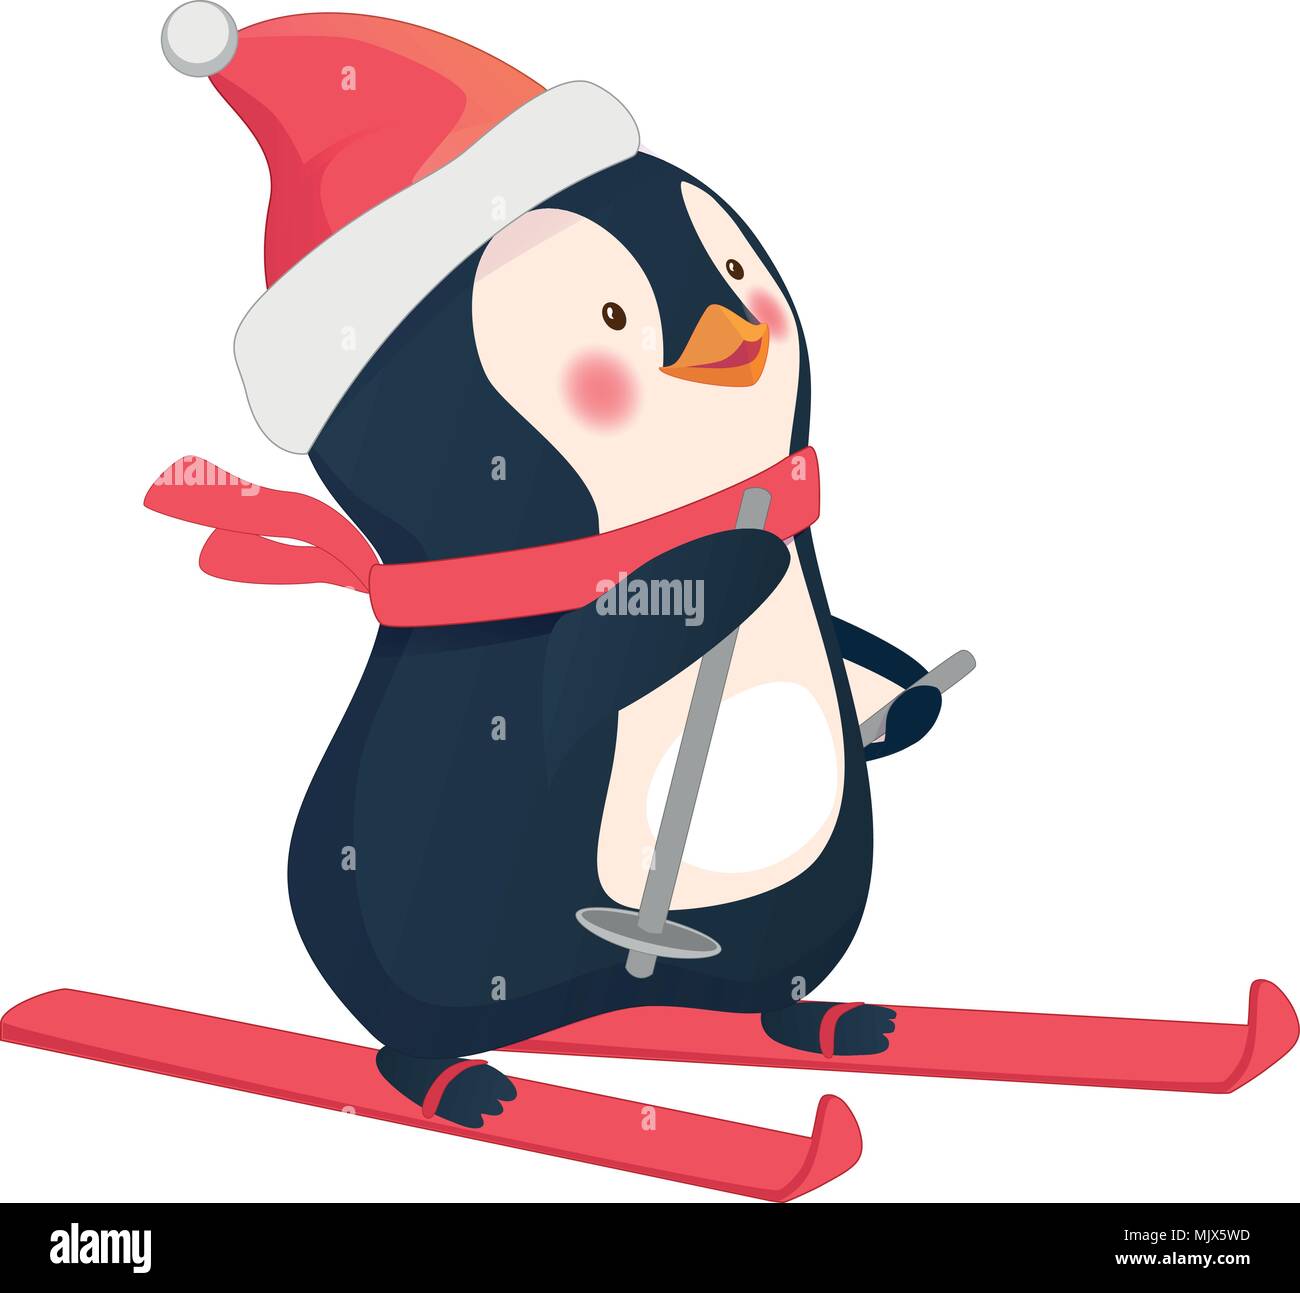 penguin on skis Stock Vector